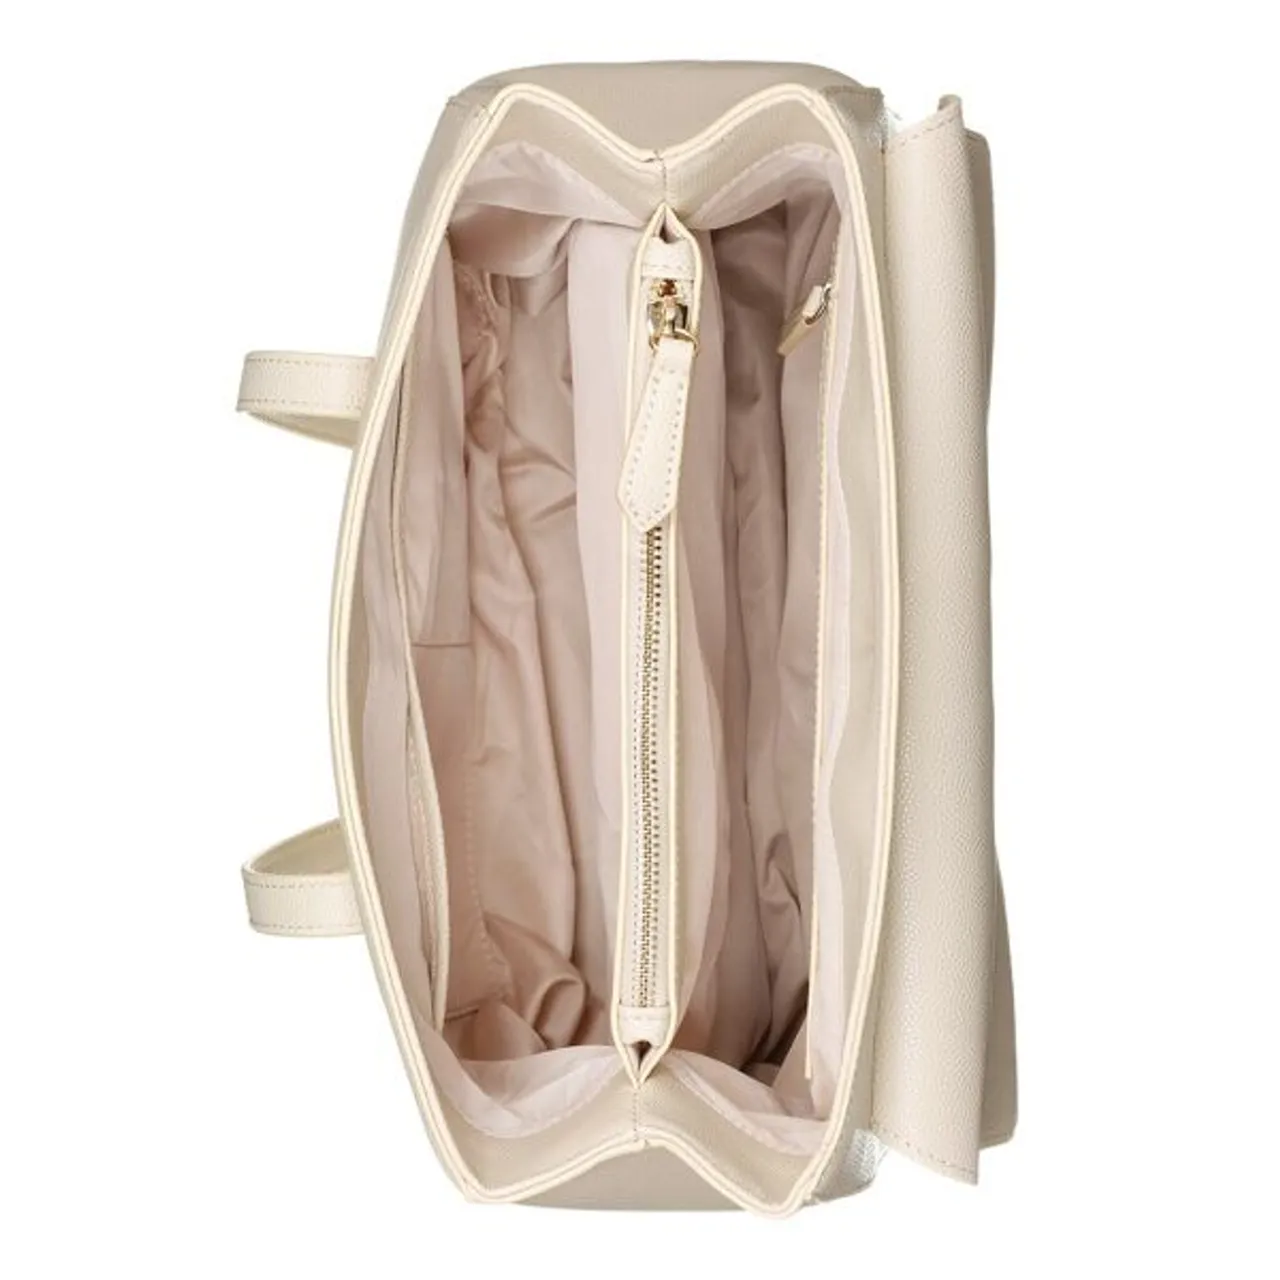 Umhängetasche VALENTINO BAGS "DIVINA" Gr. B/H: 23 cm x 15 cm, beige (ecru) Damen Taschen Handtaschen Handtasche Tasche Henkeltasche